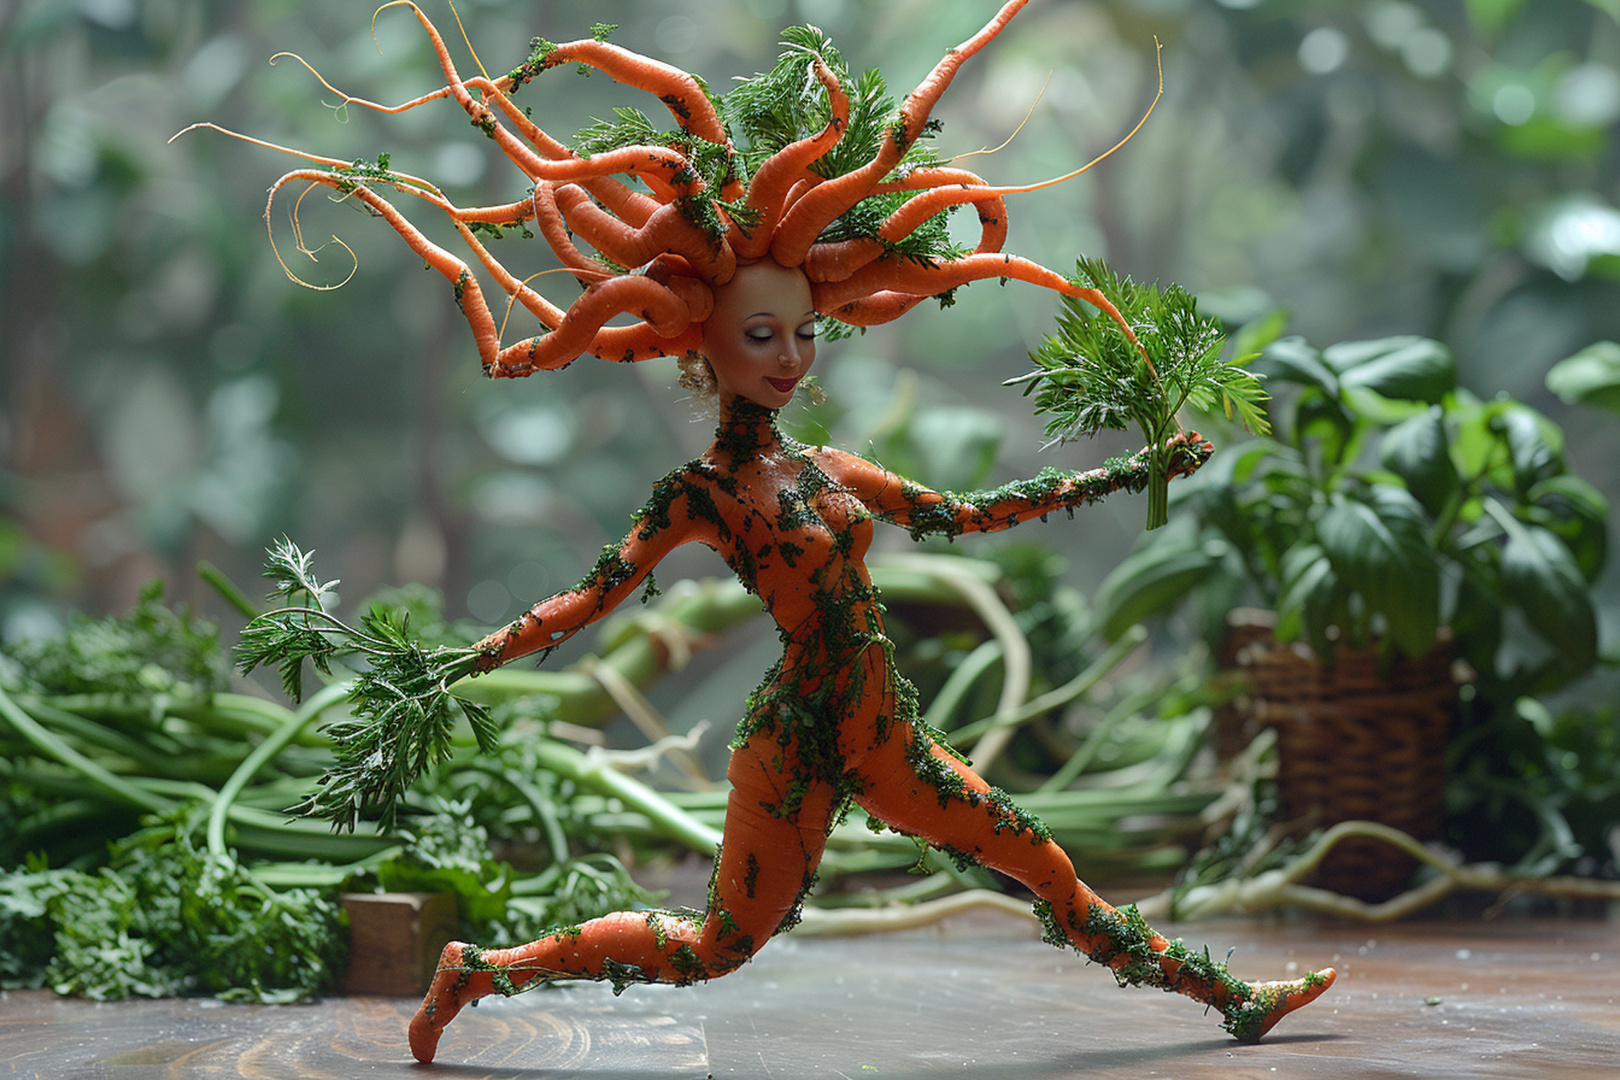 Dance of the Carrot Queen